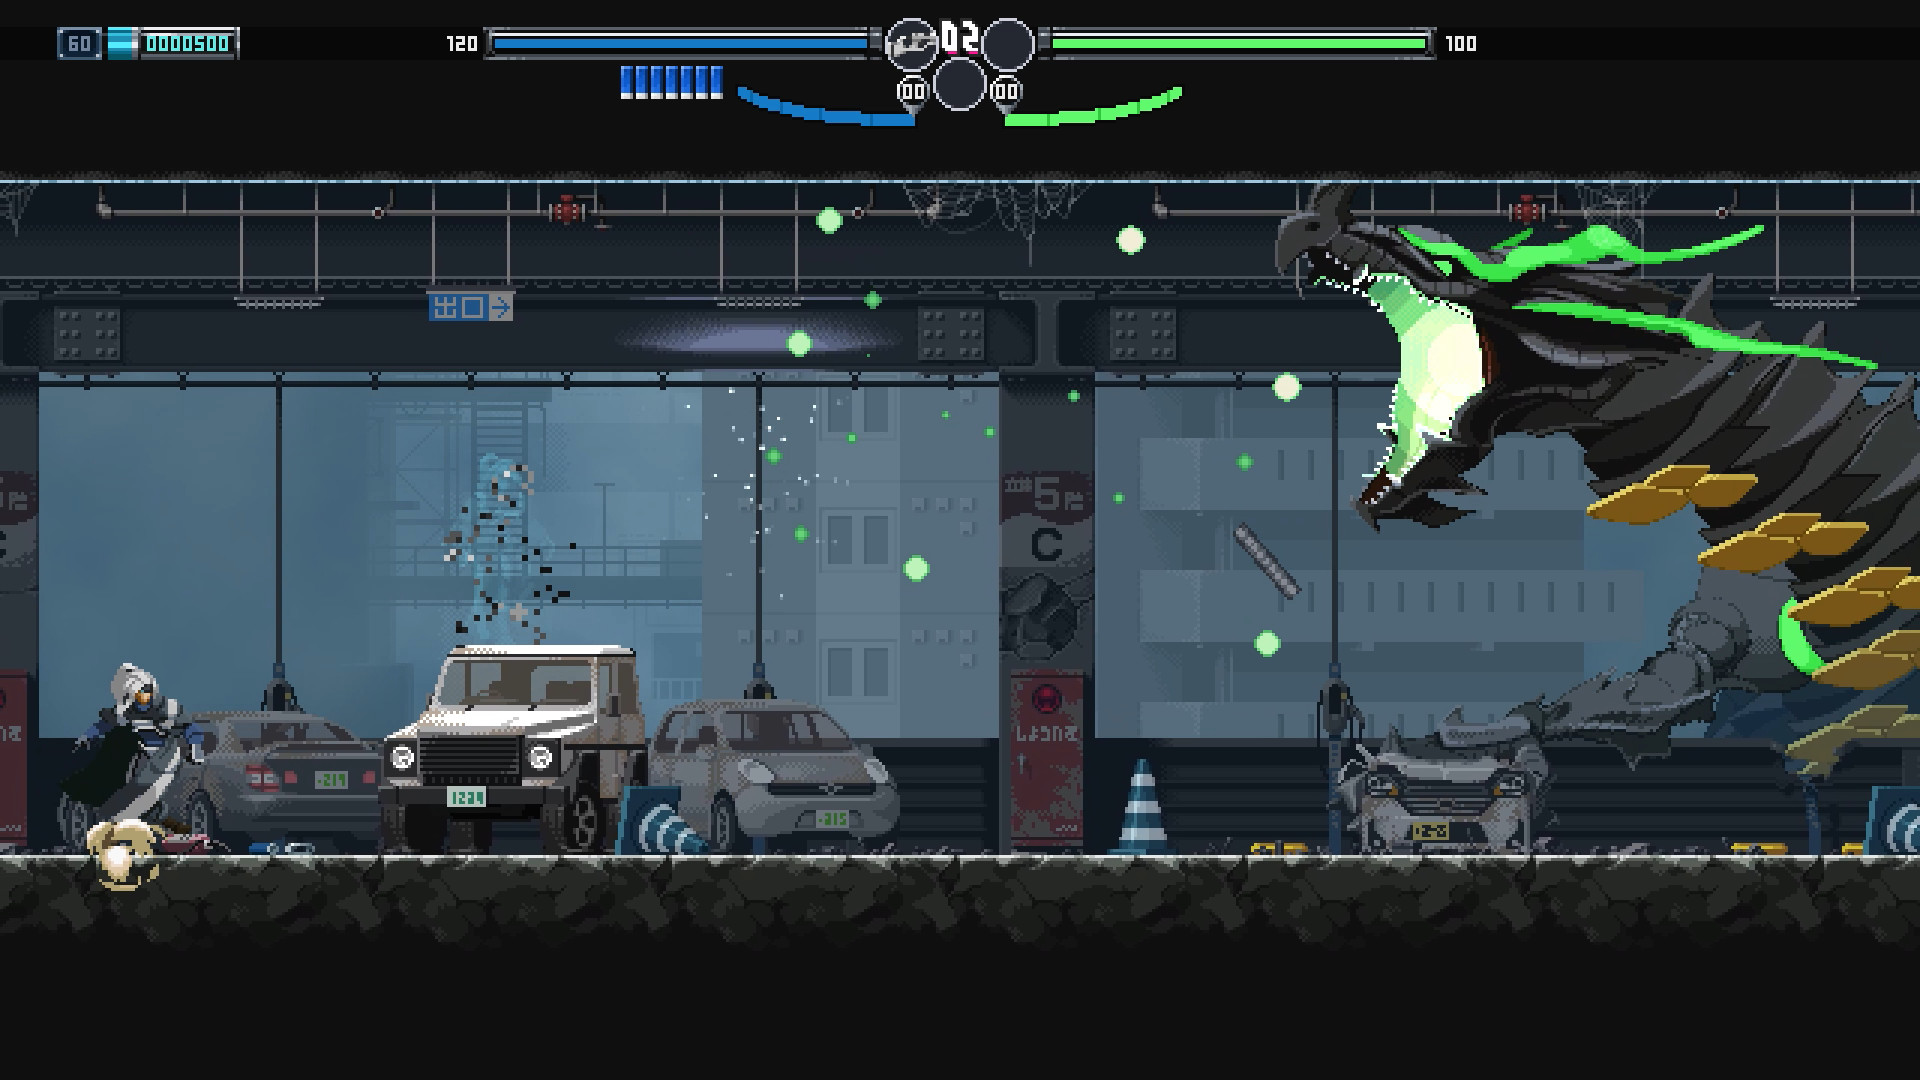 Immagine dal gioco di azione in 2D Blade Chimera, con protagonista dai capelli bianchi che combatte un drago gigante in un parcheggio